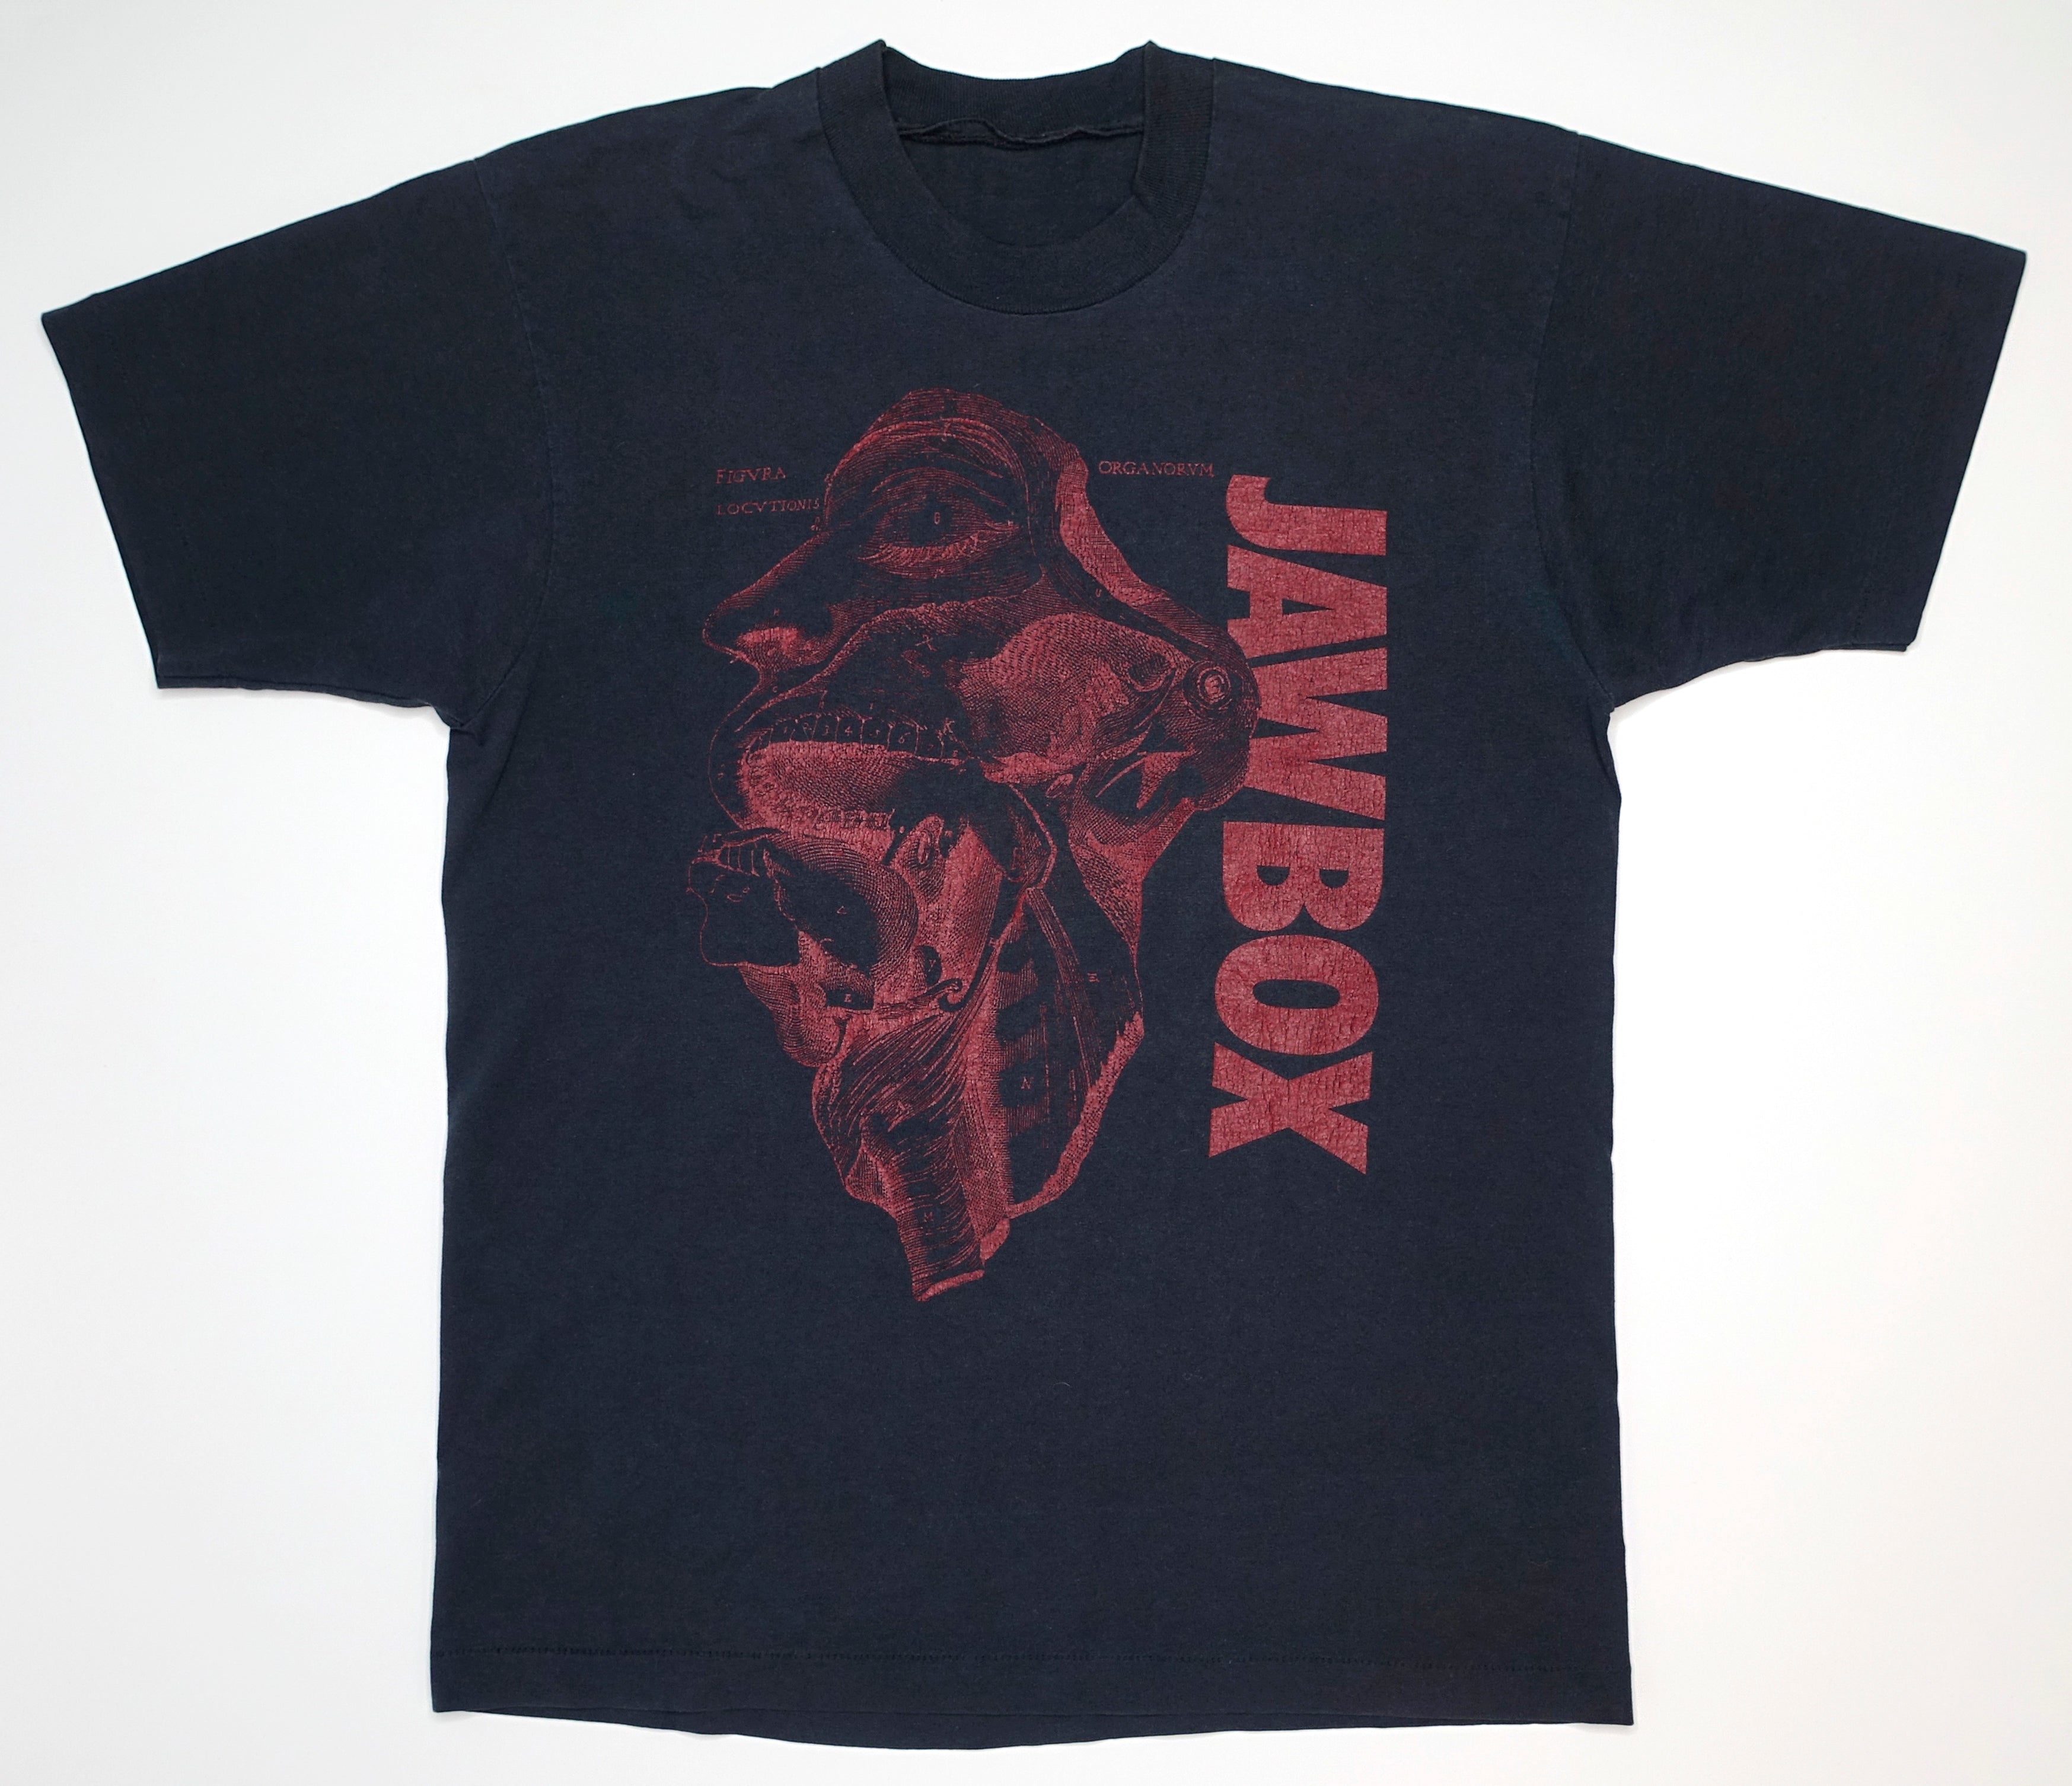 Jawbox - Anatomy Of A Jaw 1990 Tour Shirt Size Large